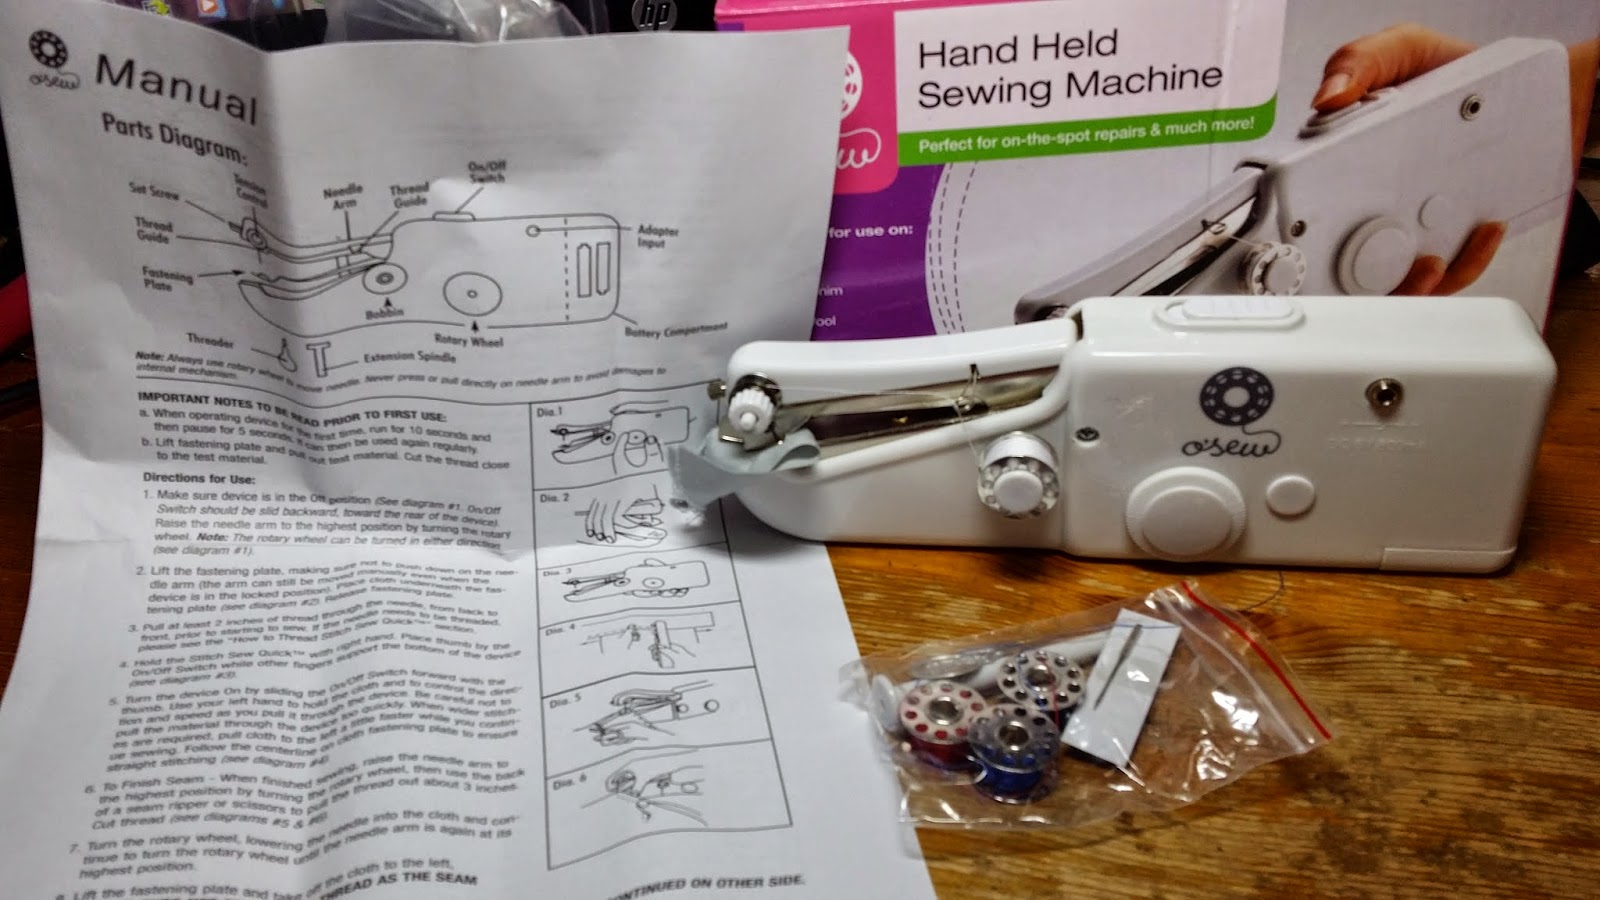  Handheld Sewing Machine